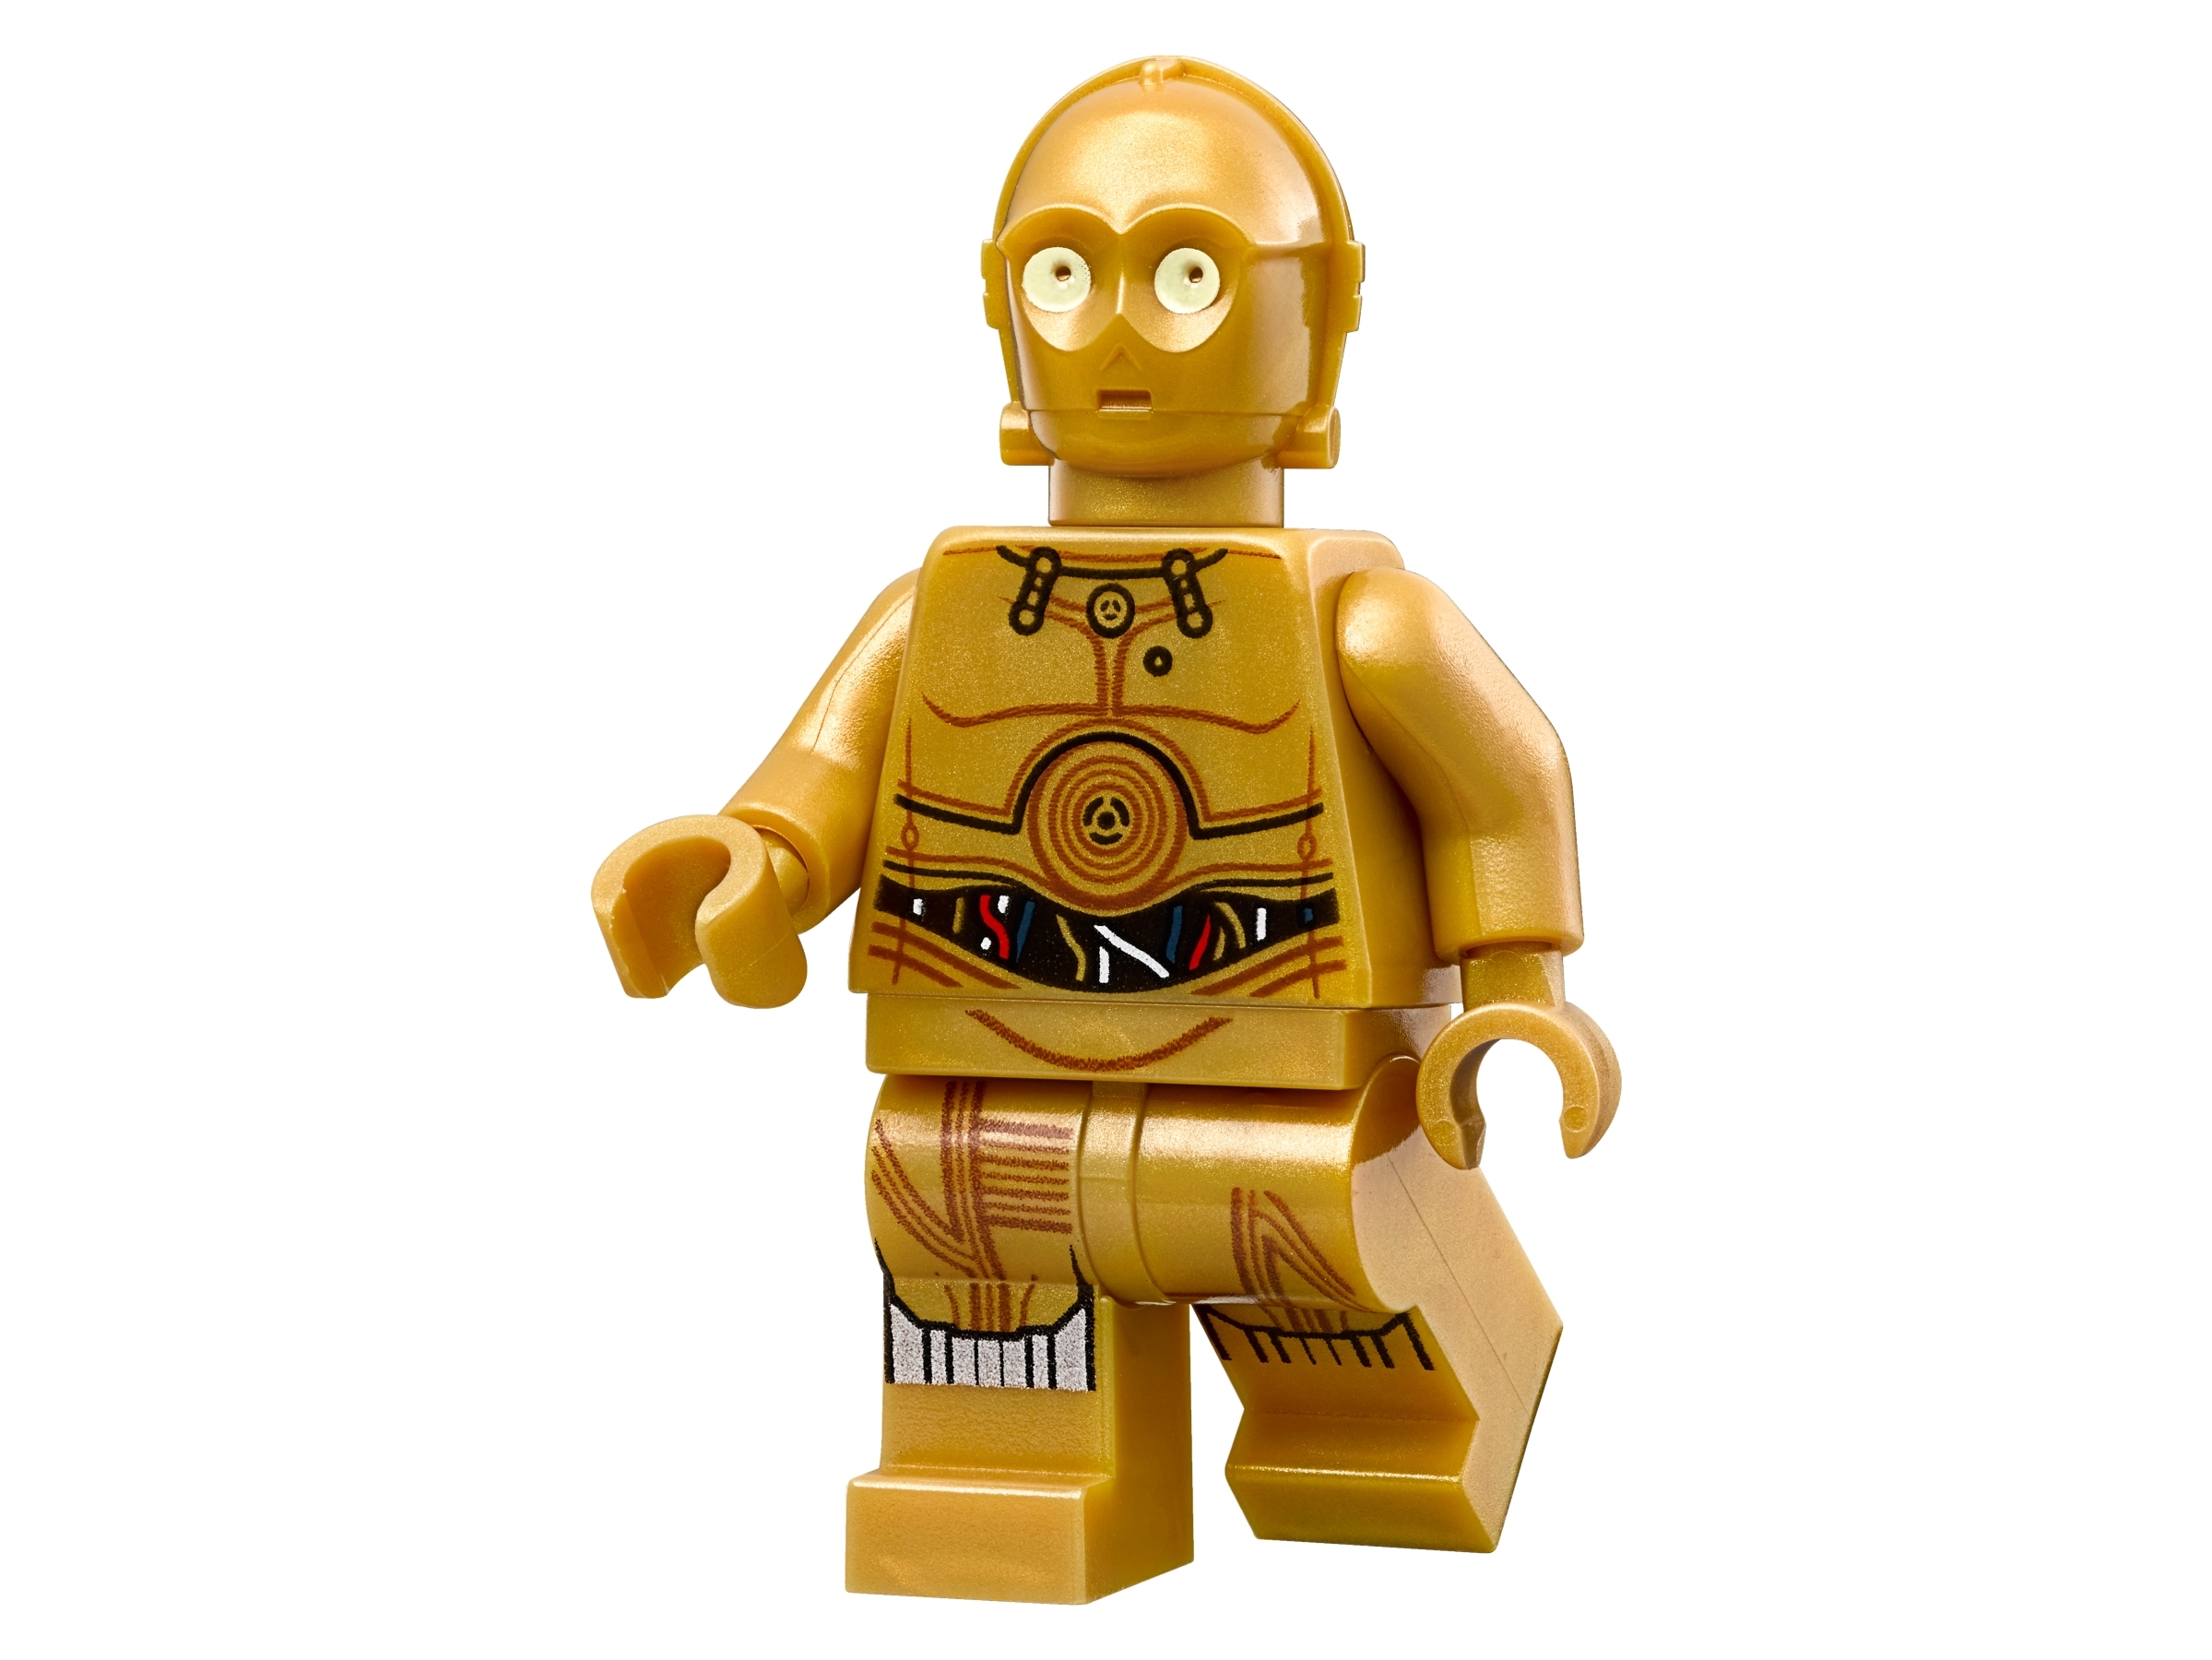 Lego Star Wars Minifigure Luke Skywalker From The Set 75173 Lukes Landspeeder 